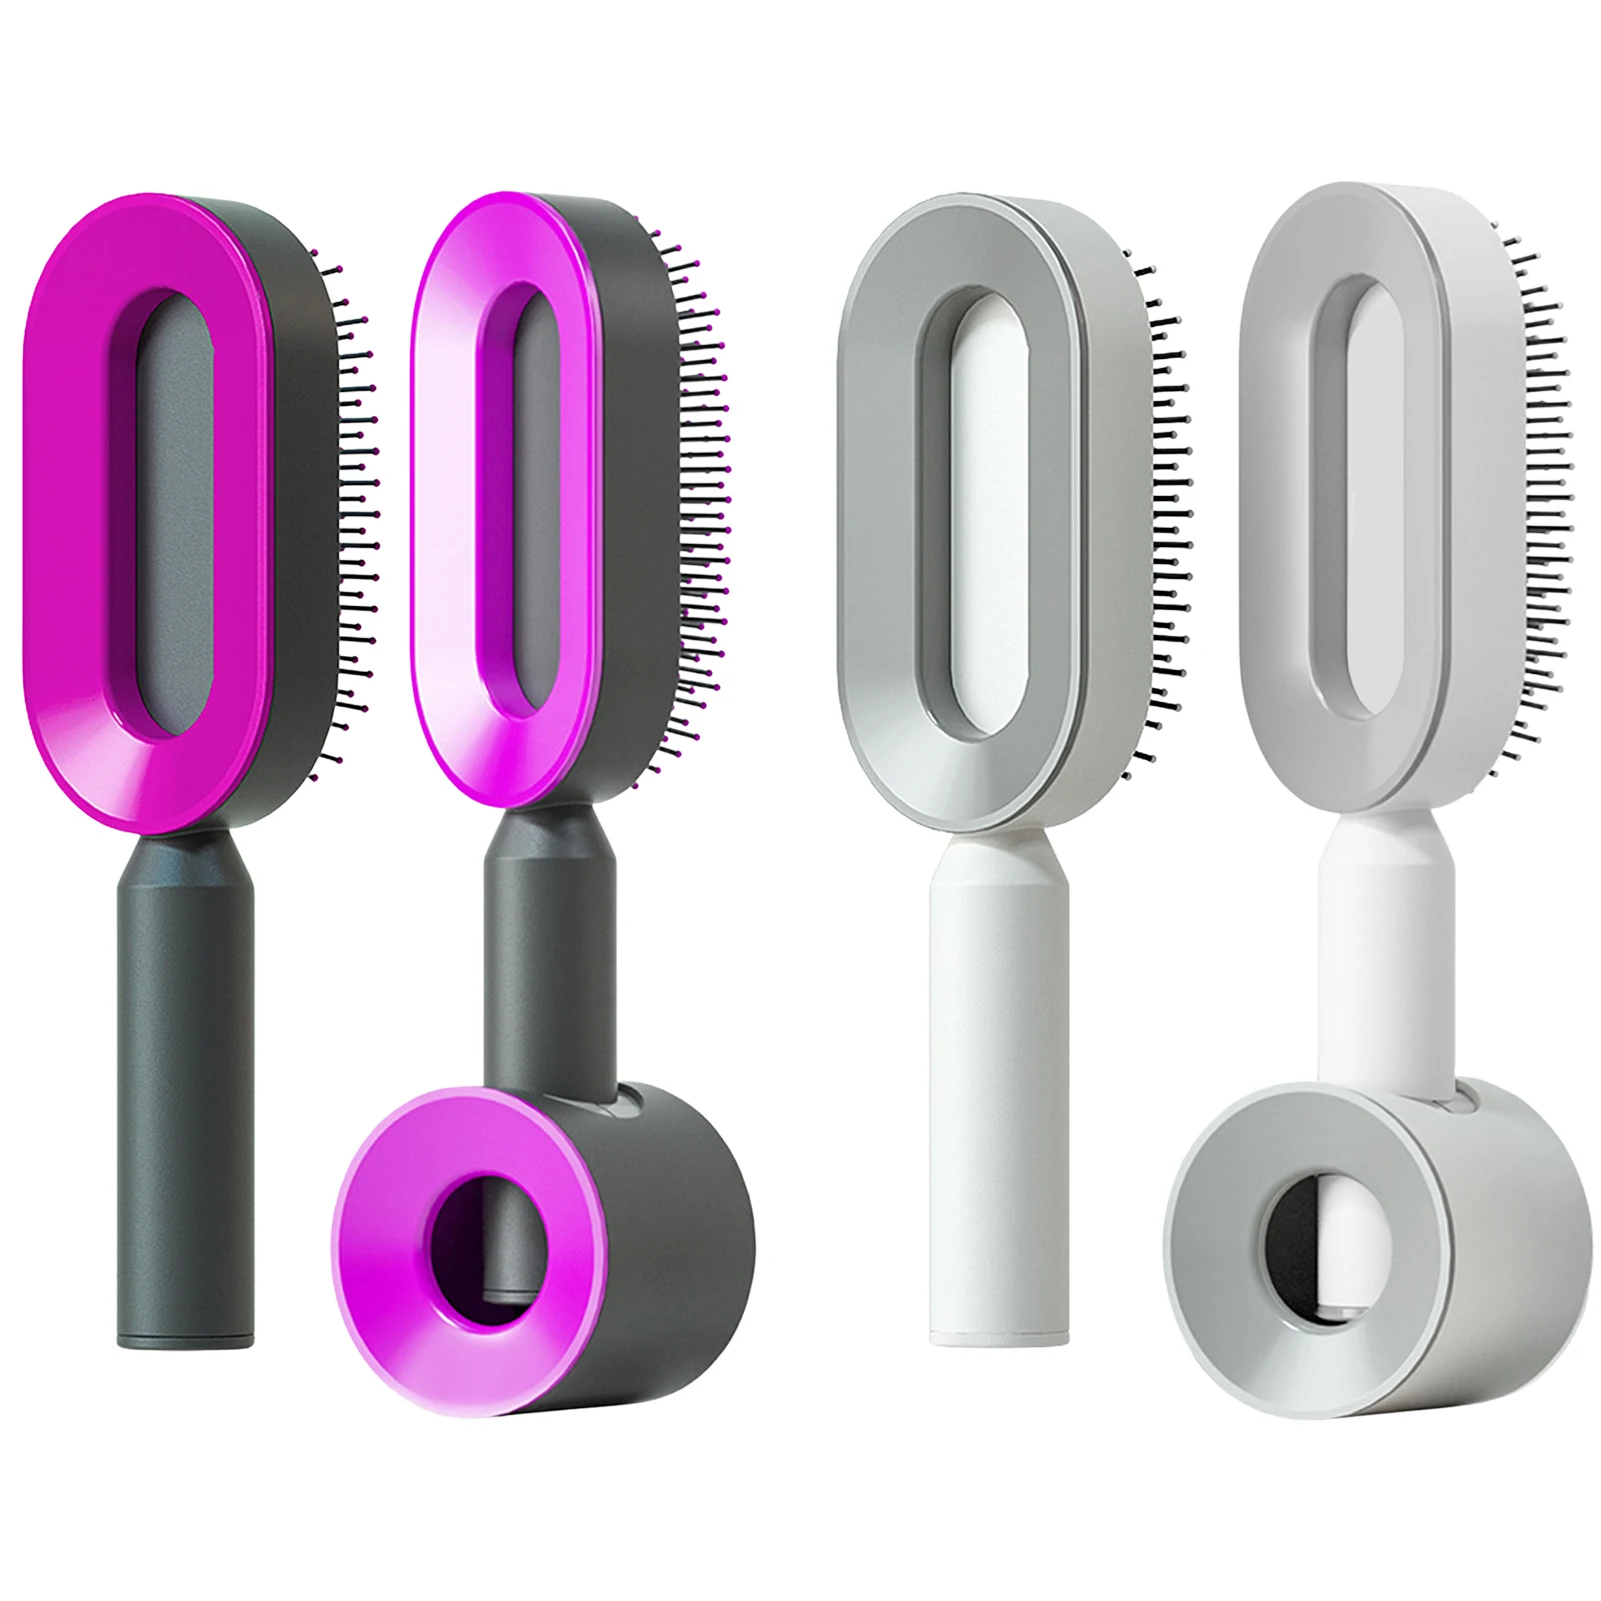 

Detangling Brush Hair Brush Detangler Ultra-soft Massage Comb Glide Through Tangles With Ease For All Hair Types For Women Girls